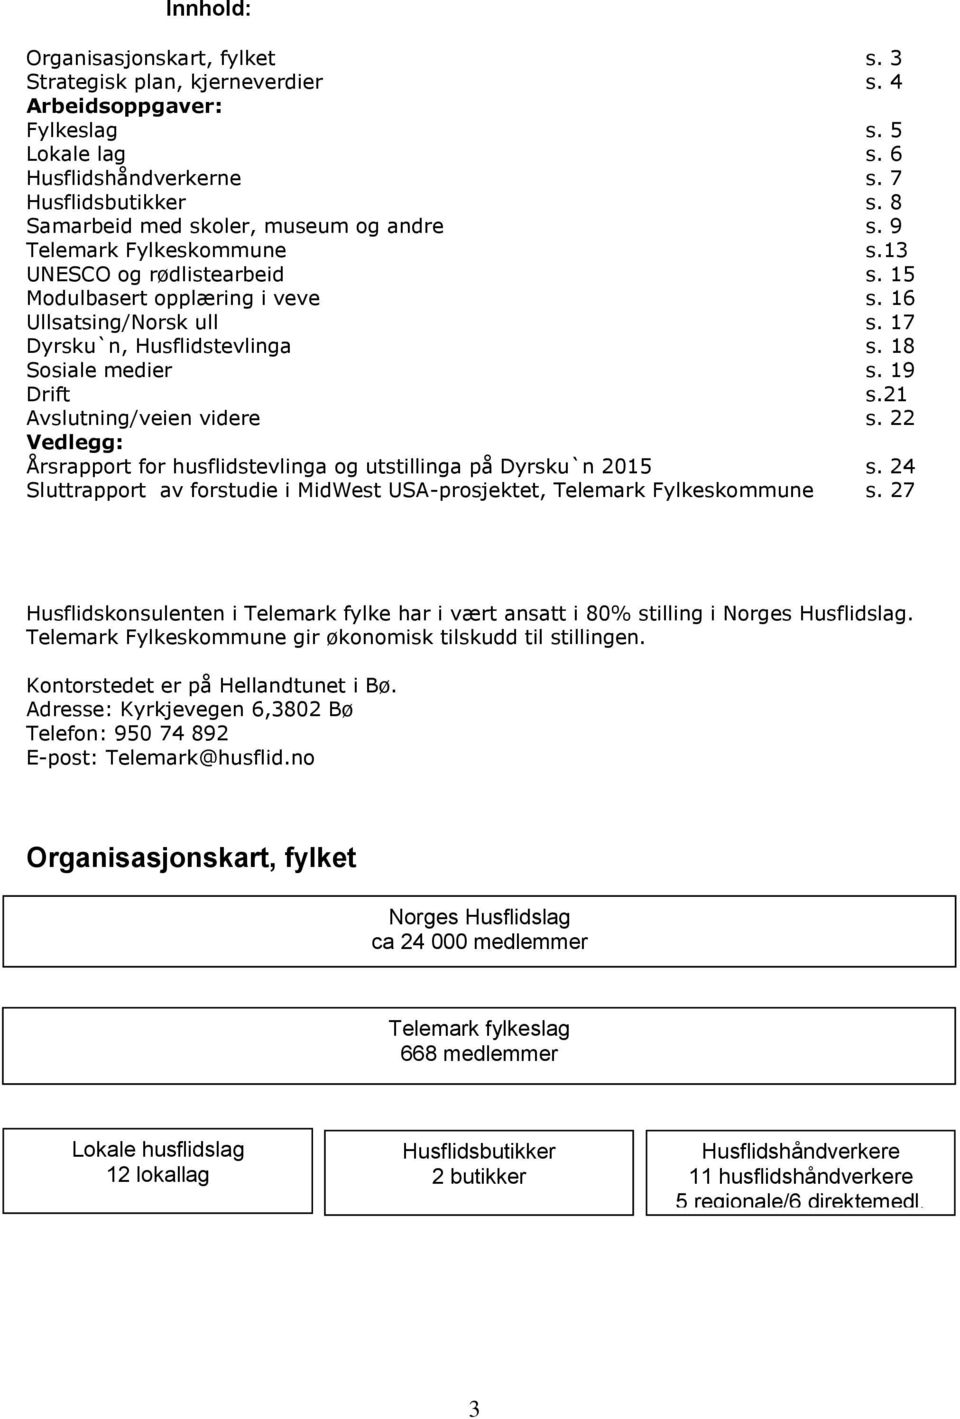 18 Sosiale medier s. 19 Drift s.21 Avslutning/veien videre s. 22 Vedlegg: Årsrapport for husflidstevlinga og utstillinga på Dyrsku`n 2015 s.